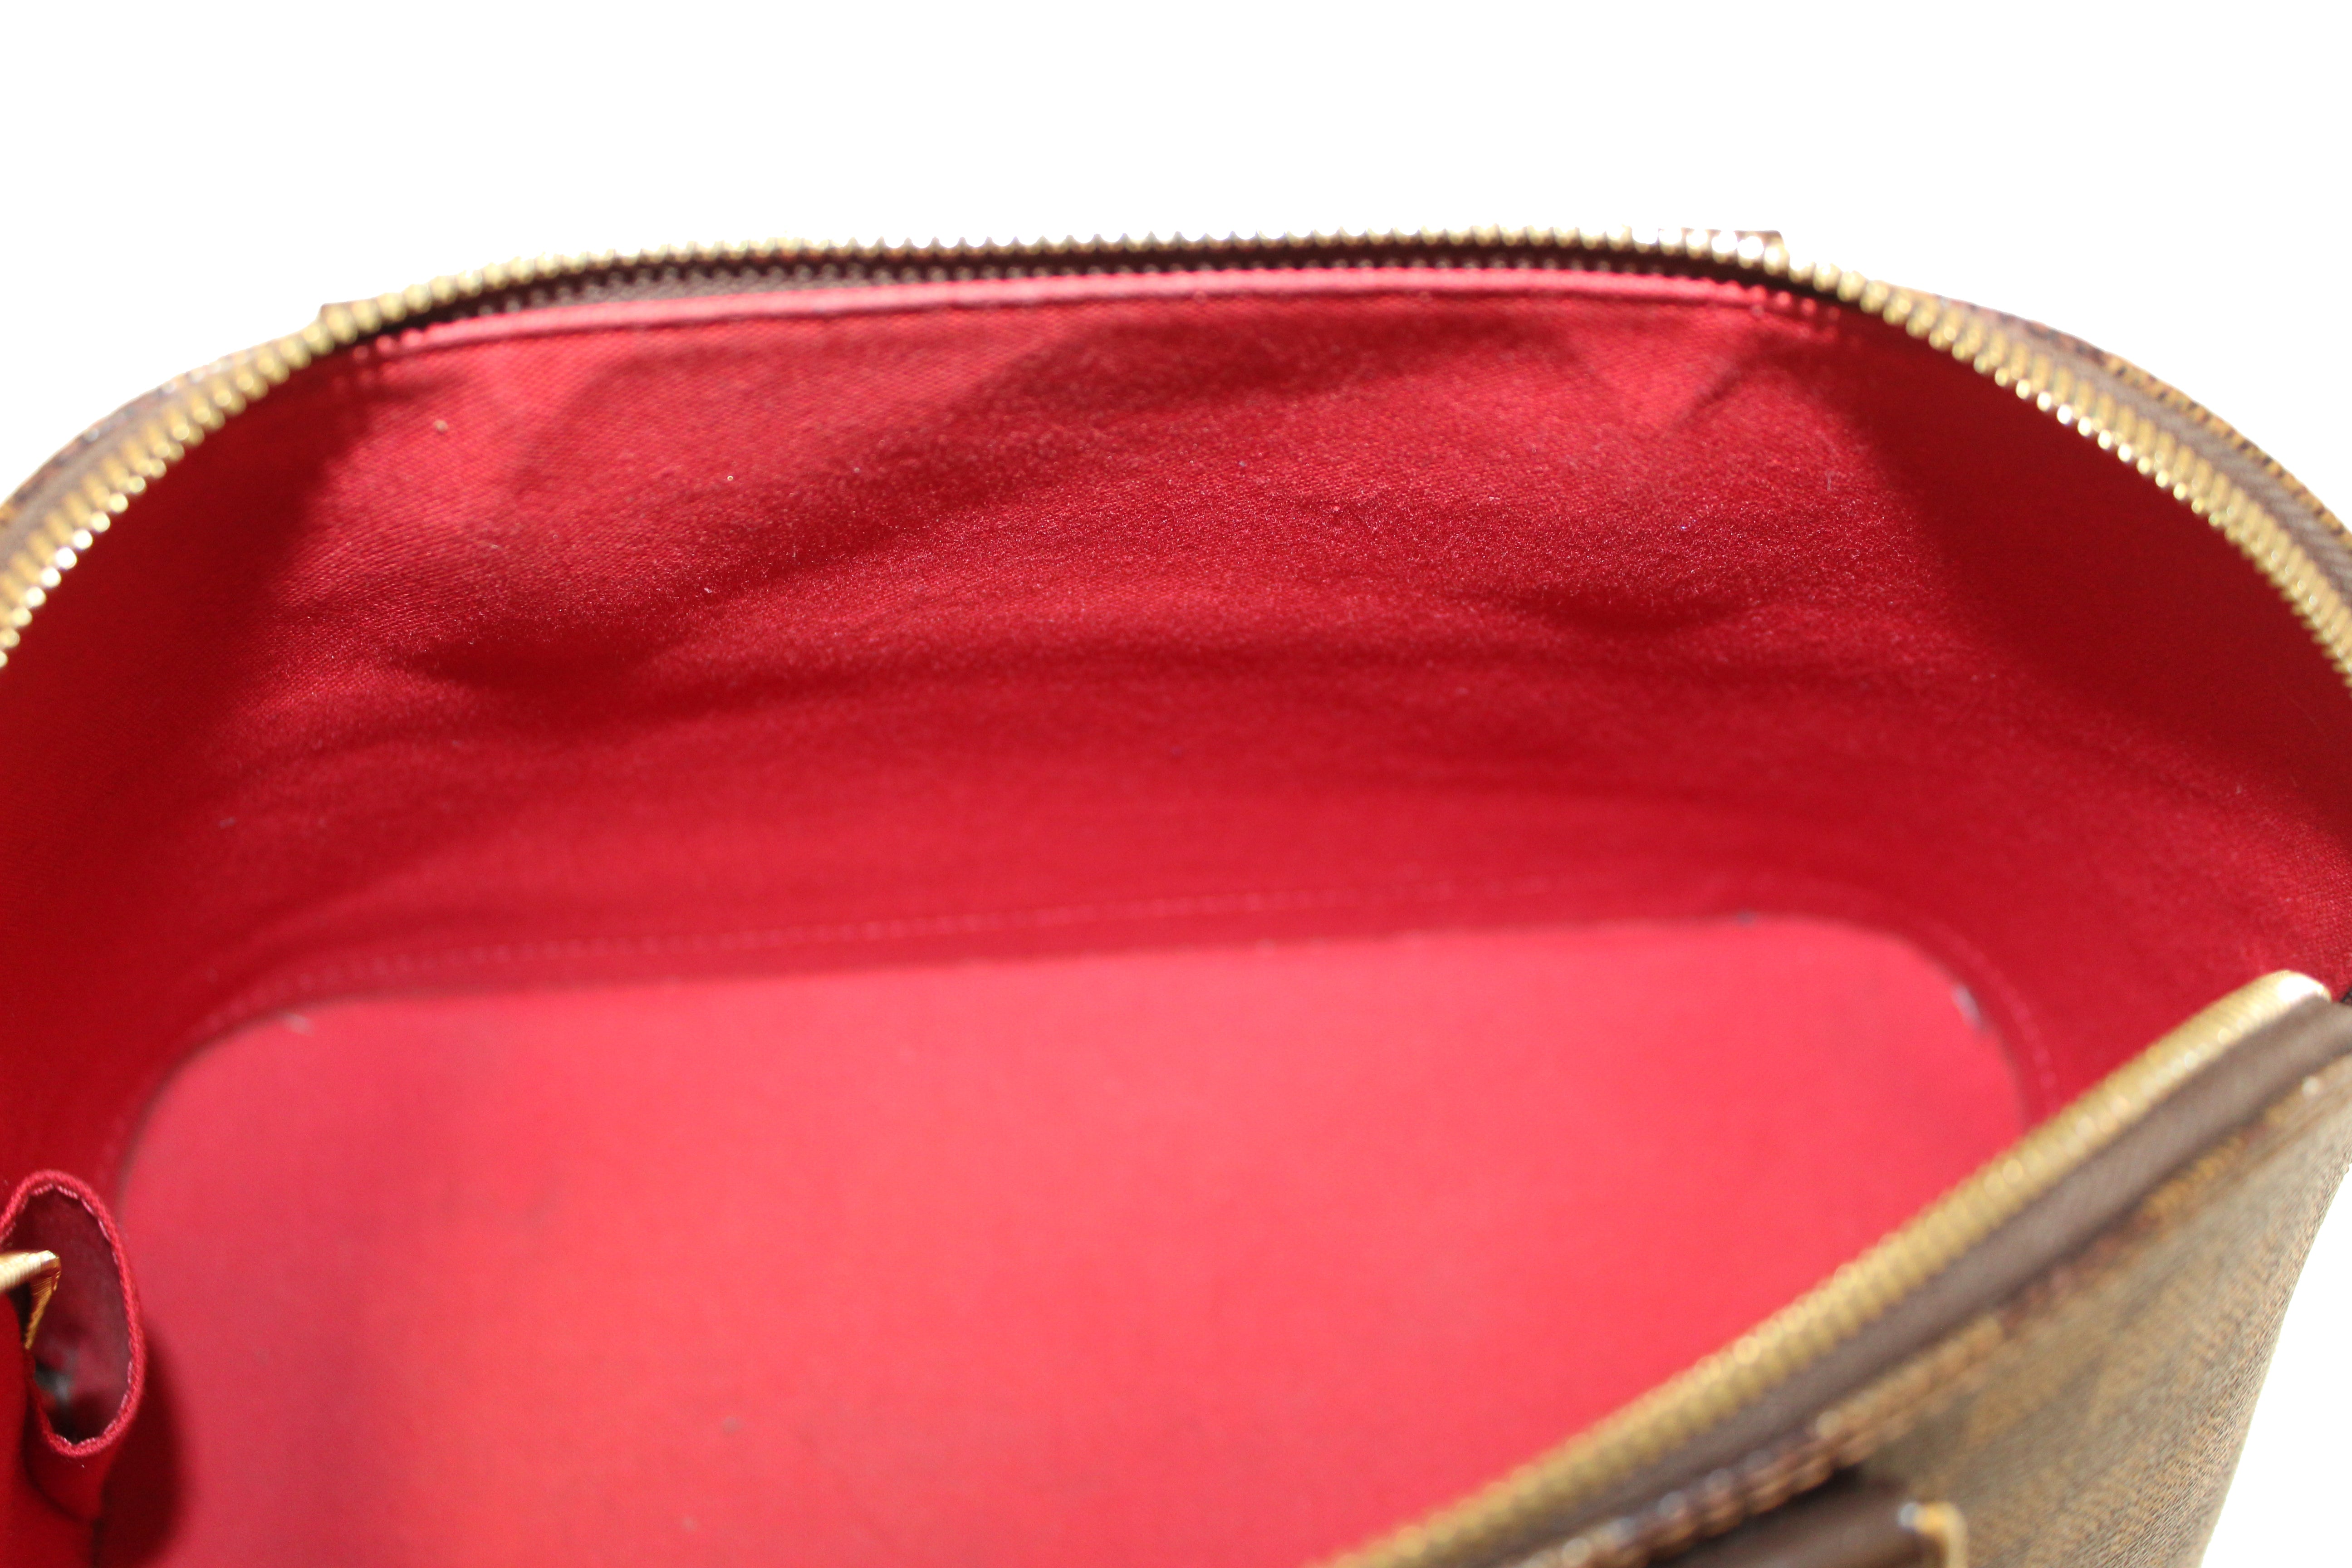 Authentic Louis Vuitton Damier Ebene Canvas Classic Alma PM Hand Bag